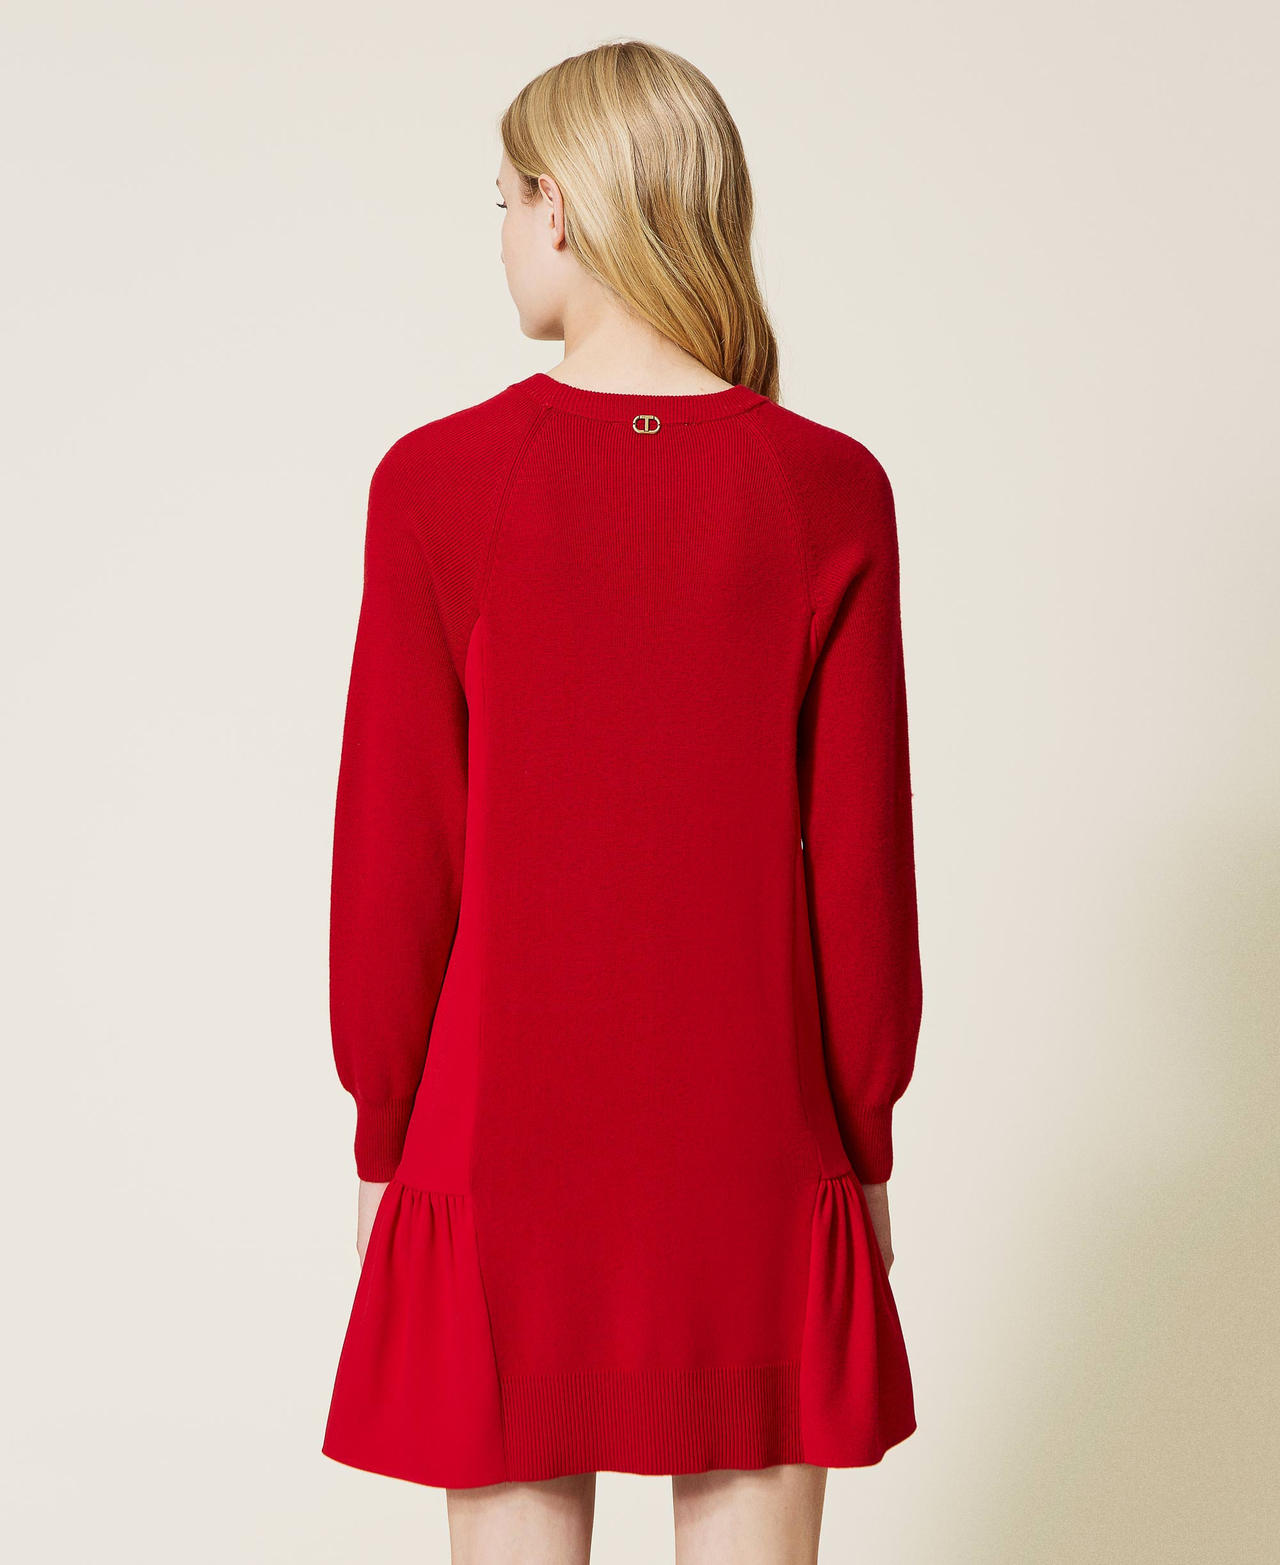 Robe courte en maille avec insertions Rouge Coquelicot Femme 222TT3280-03